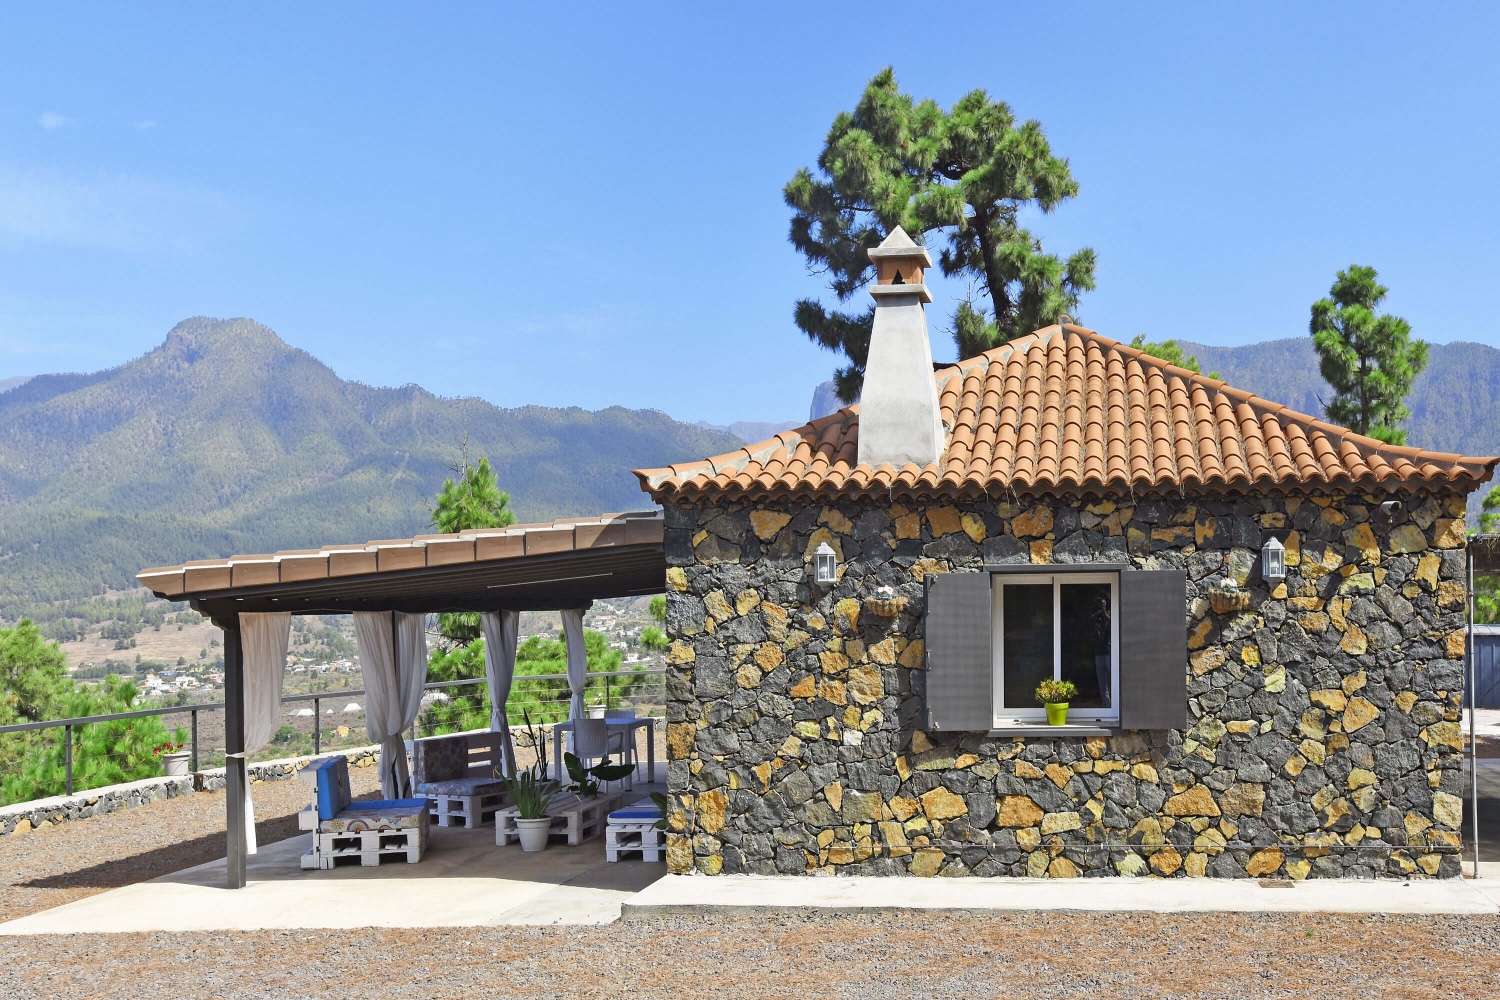 La rustica casa in pietra si trova in una pineta con una fantastica vista sul mare e sulle montagne, un paradiso per le escursioni